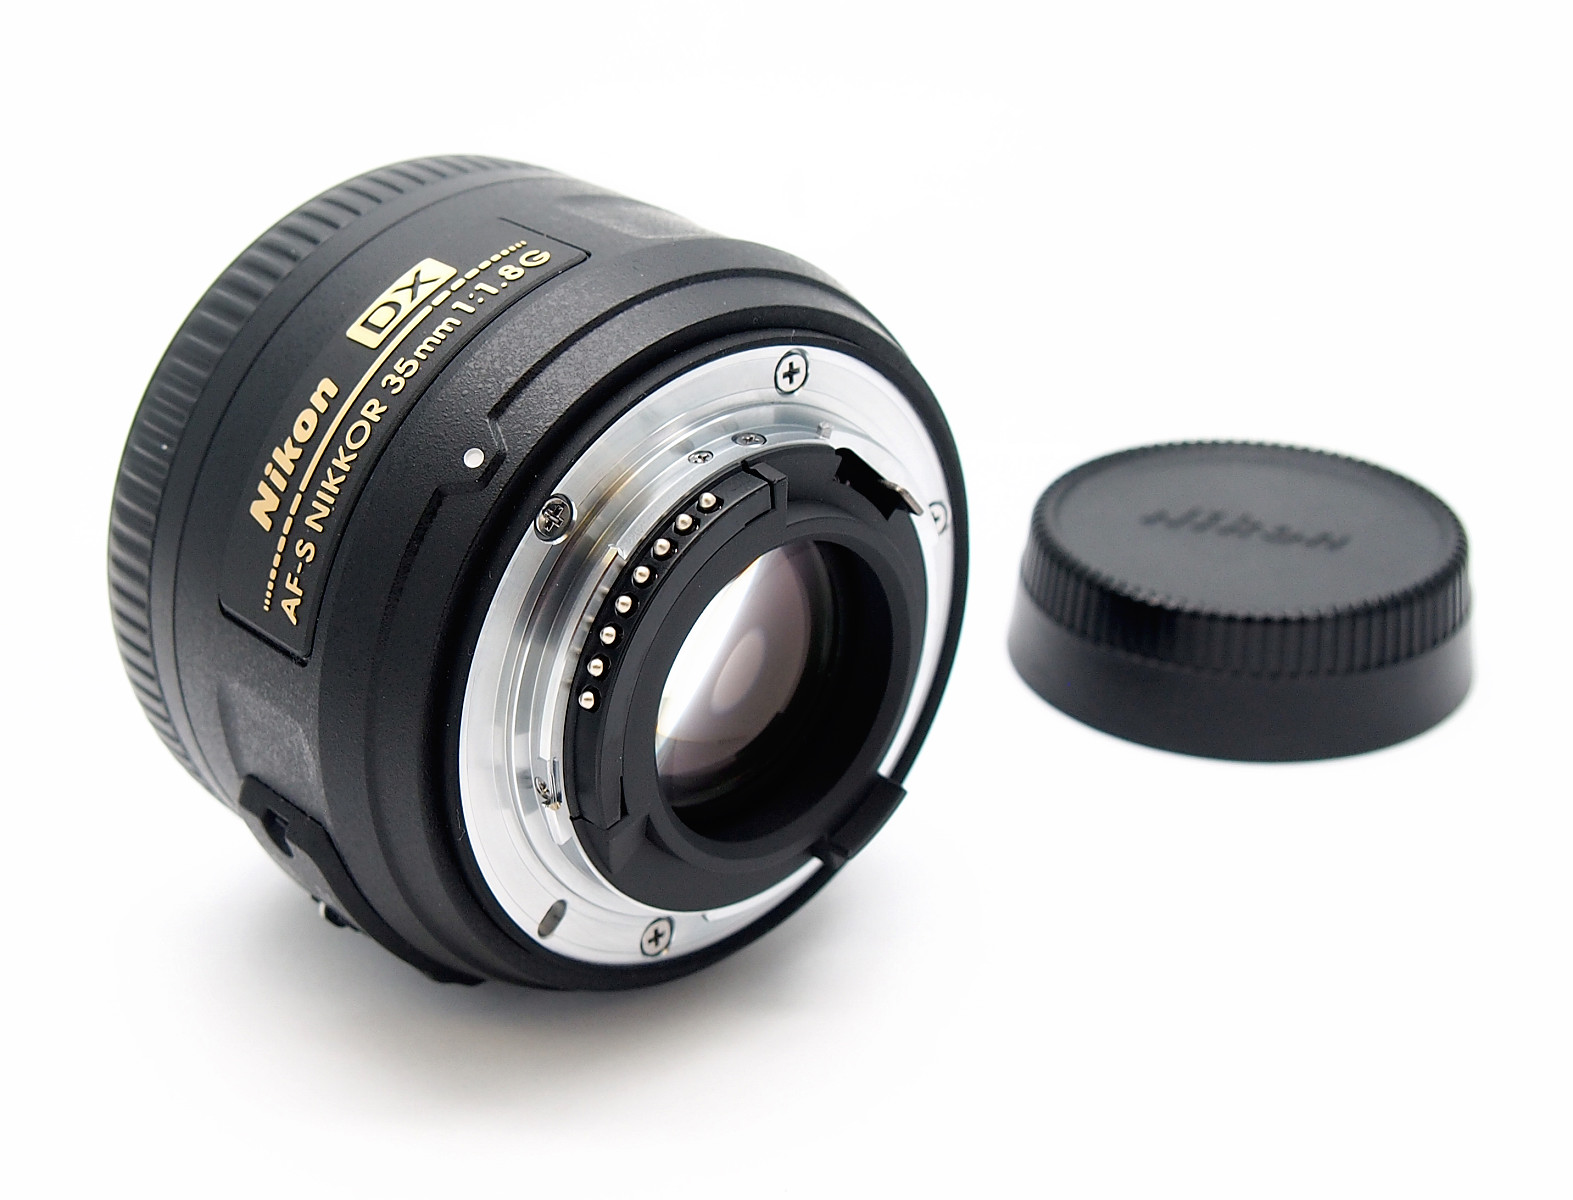 Nikon 35mm F1.8G AF-S DX Autofocus Lens, Mint & Boxed #8653